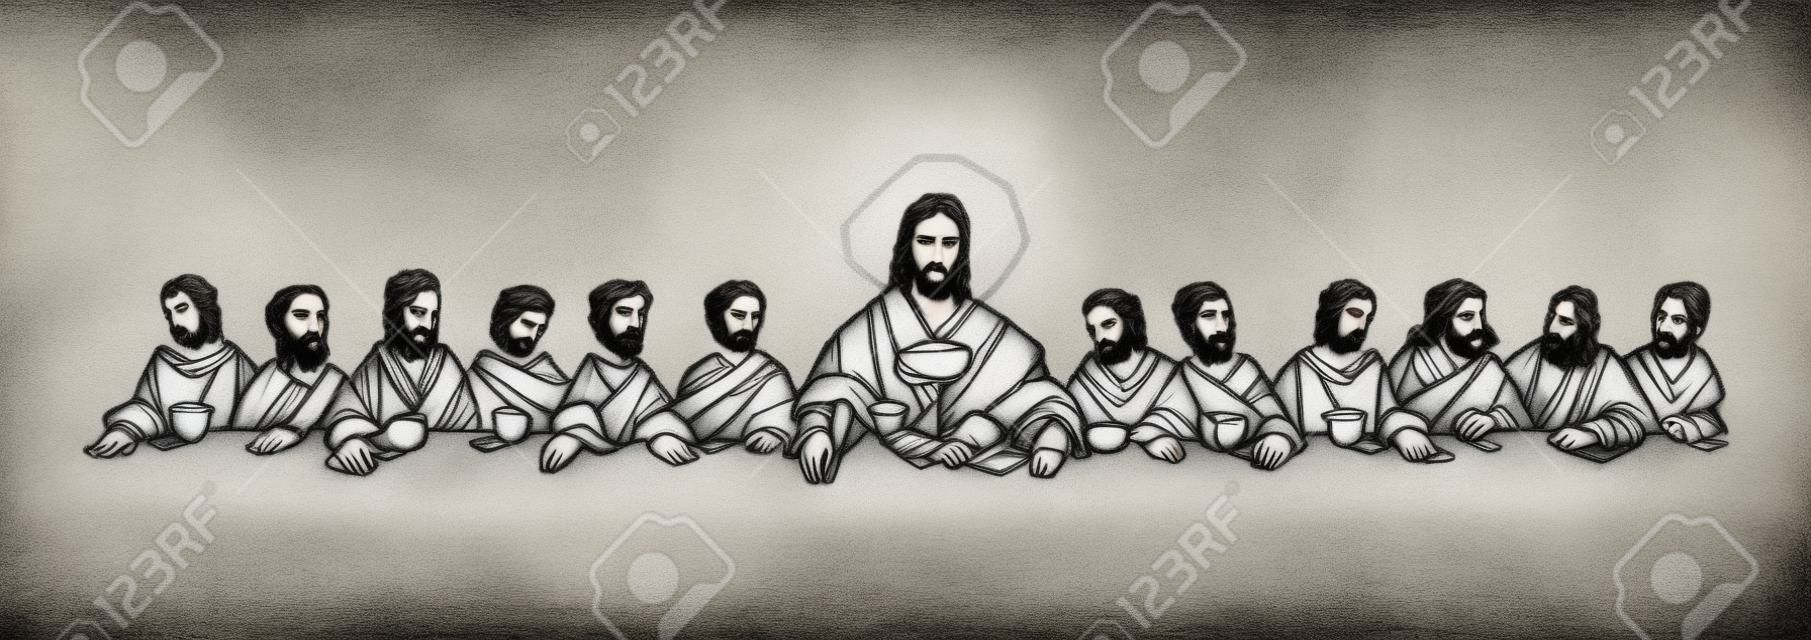 Met de hand getekende illustratie of tekening van Jezus Christus met discipelen op Laatste Avondmaal